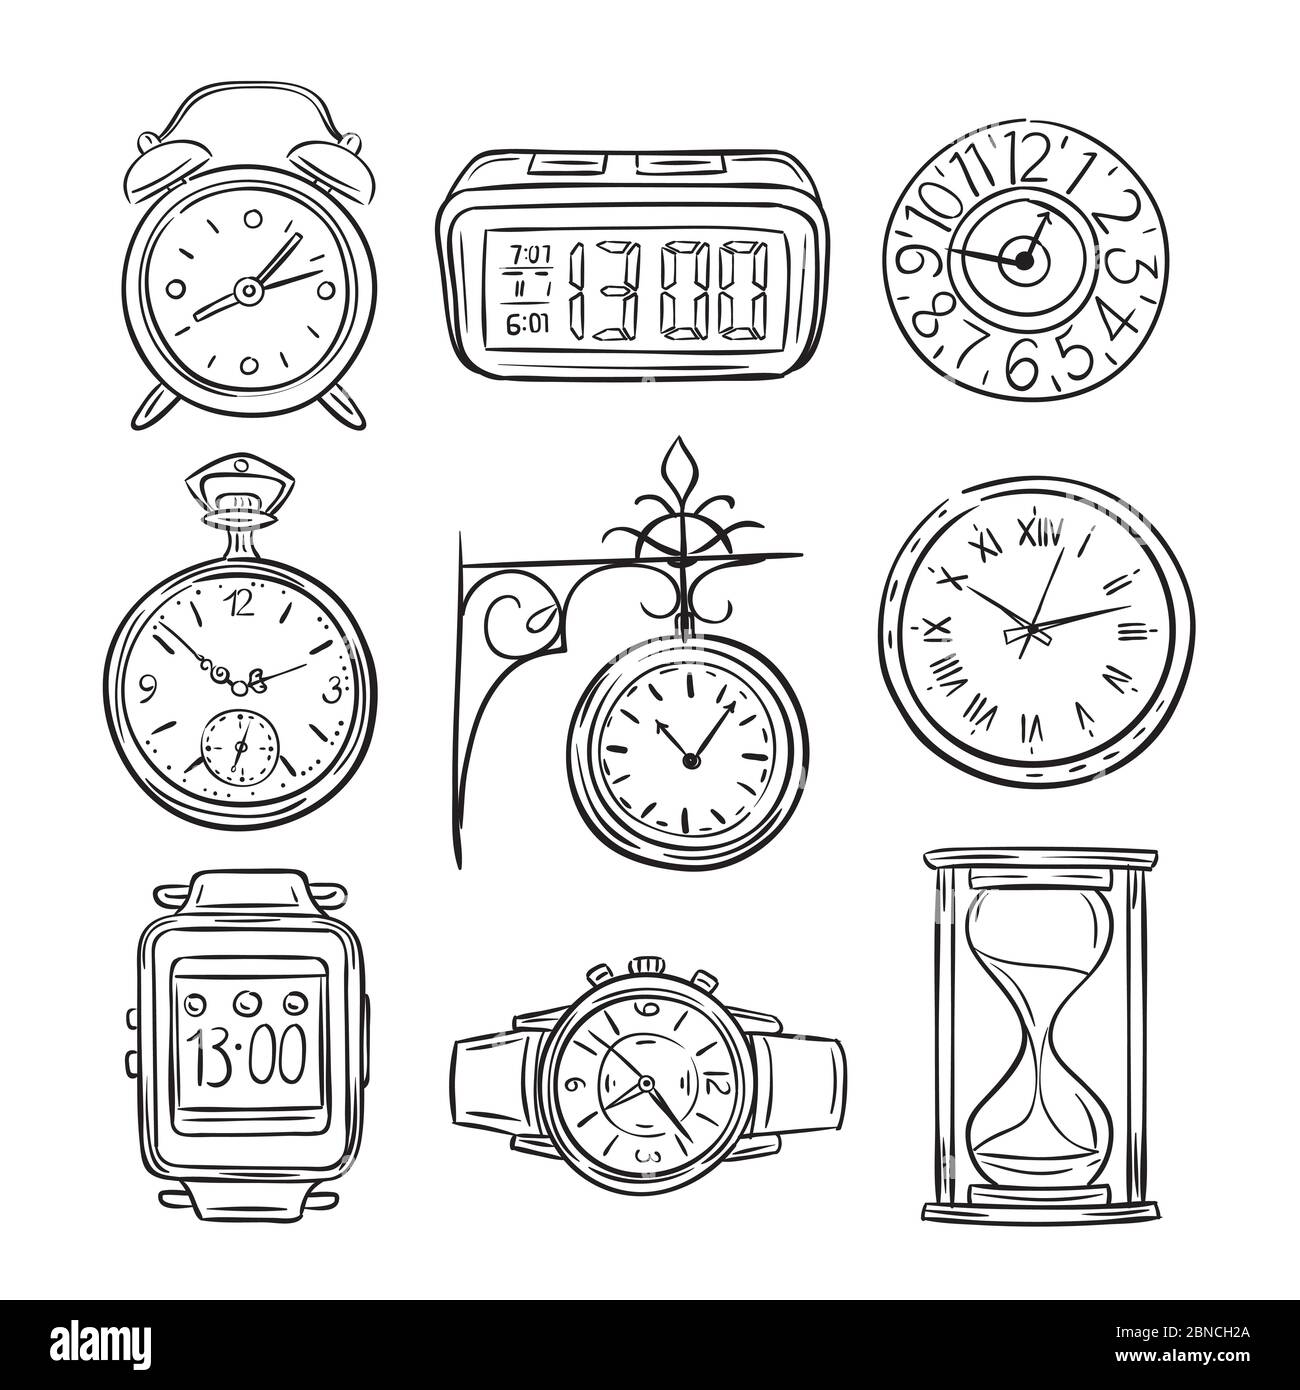 Horloge d'esquisse. Montre Doodle, alarme et minuteur, sablier. Symboles vintage vintage à vecteur temporel dessinés à la main. Illustration de l'horloge et du minuteur, de l'alarme et du sablier Illustration de Vecteur